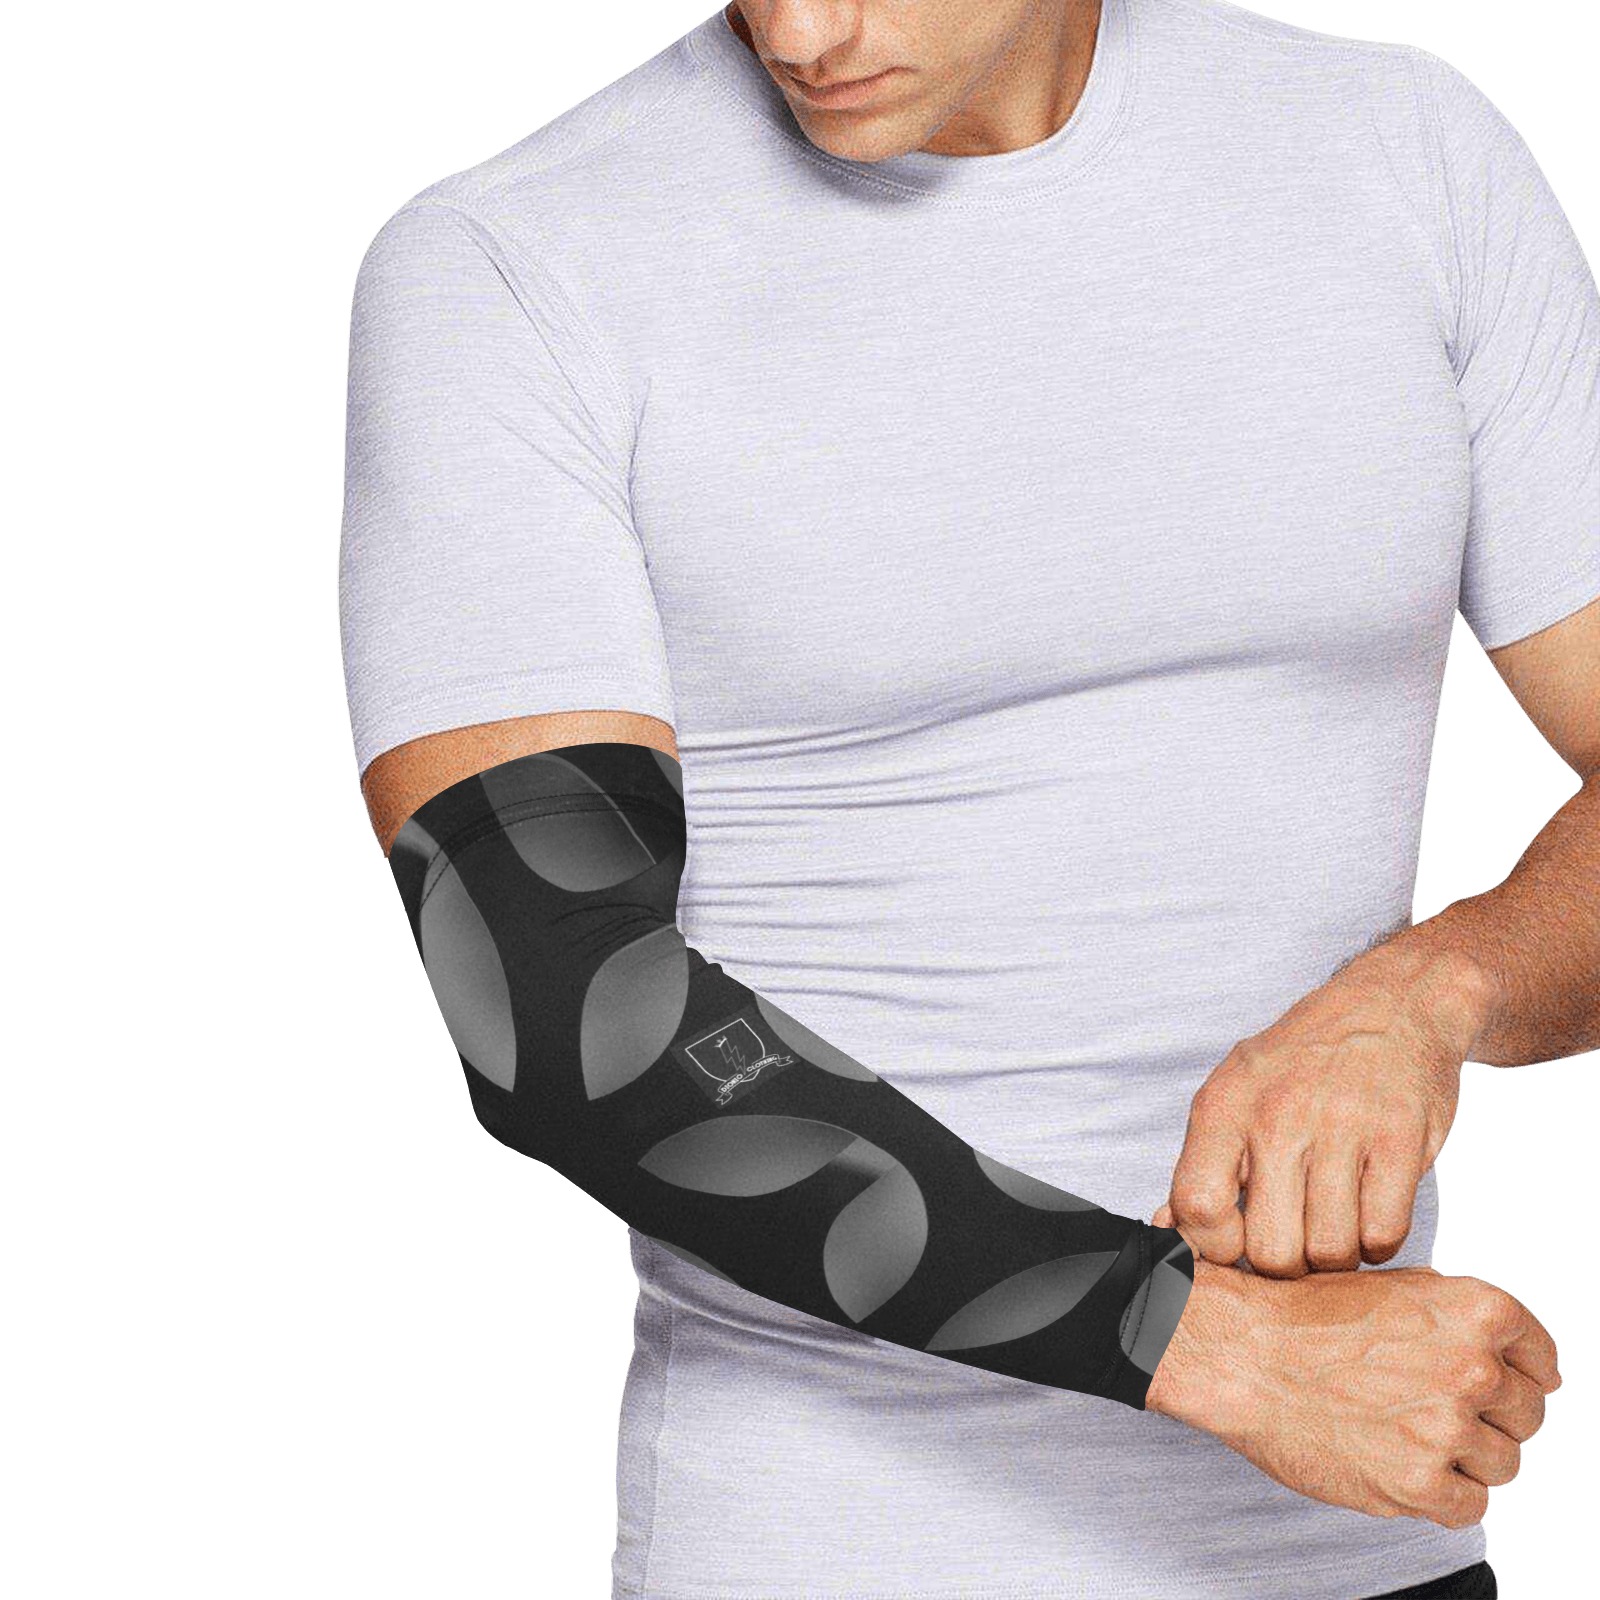 DIONIO Clothing - Vigilante II Arm Sleeves (White & Black) Arm Sleeves (Set of Two)